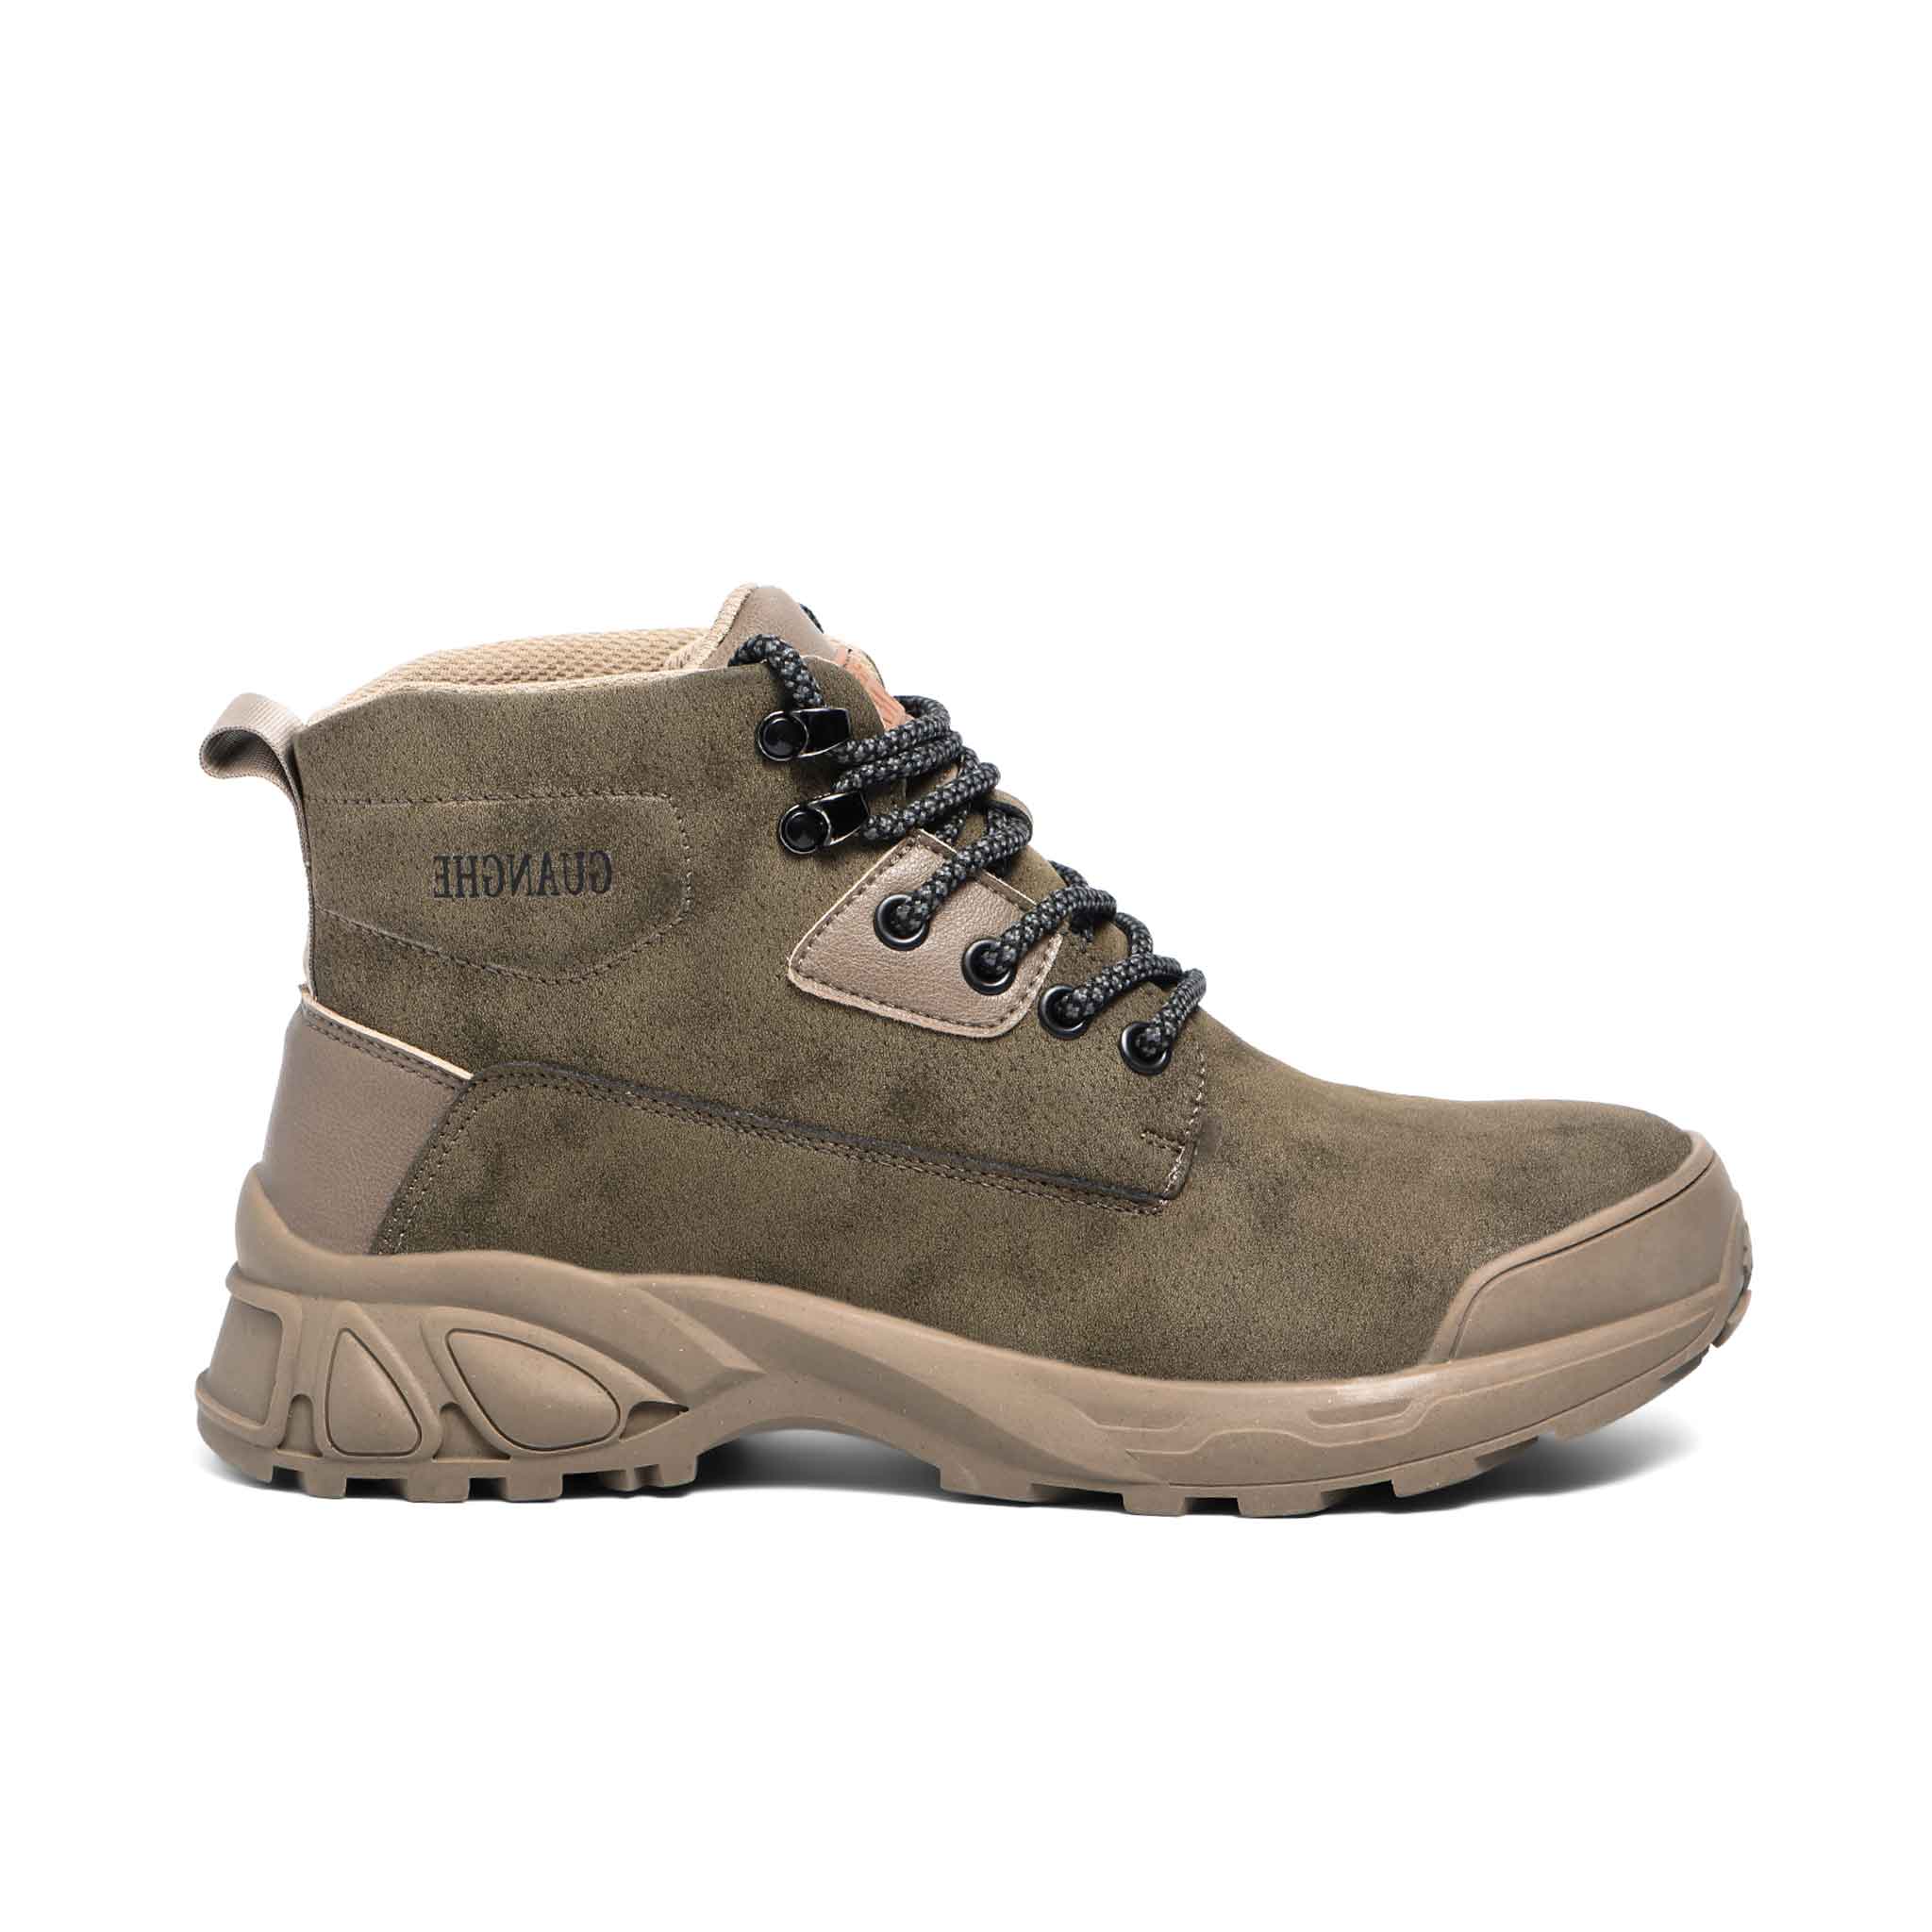 Men's 6" Steel Toe Boots - Rubber Sole | B259